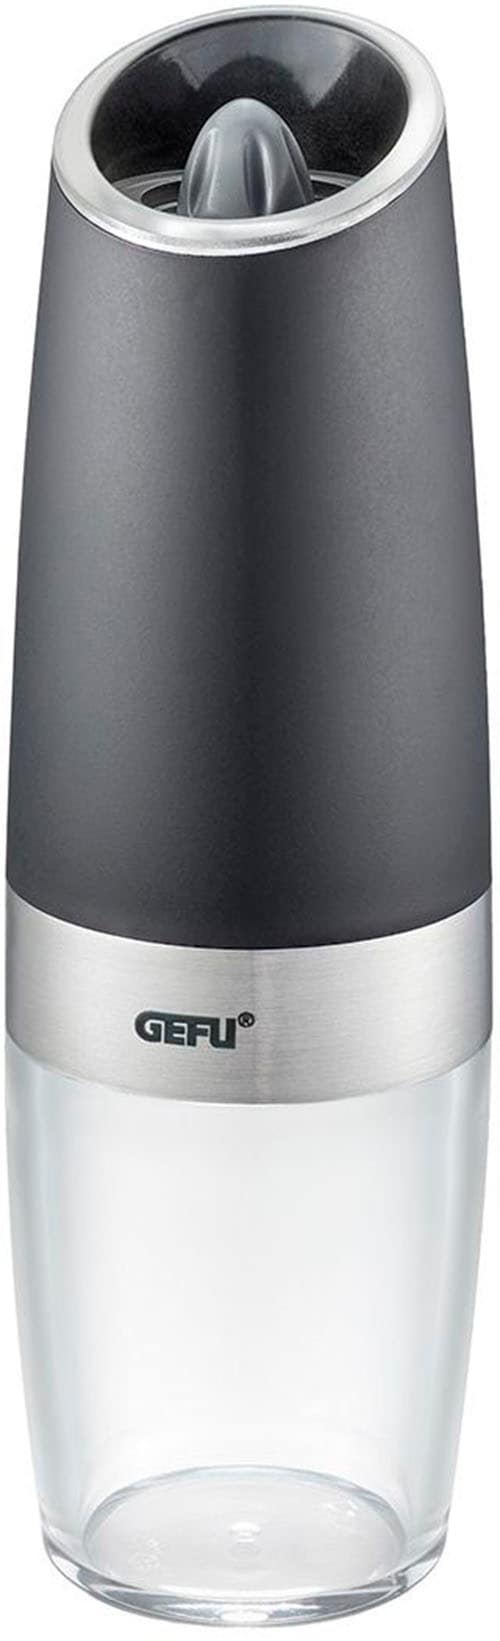 GEFU Salz-/Pfeffermühle »GIVA«, (1 St.), Kippsensor für automat. Mahlen, einstellbare Mahlstufen, LED-Anzeige